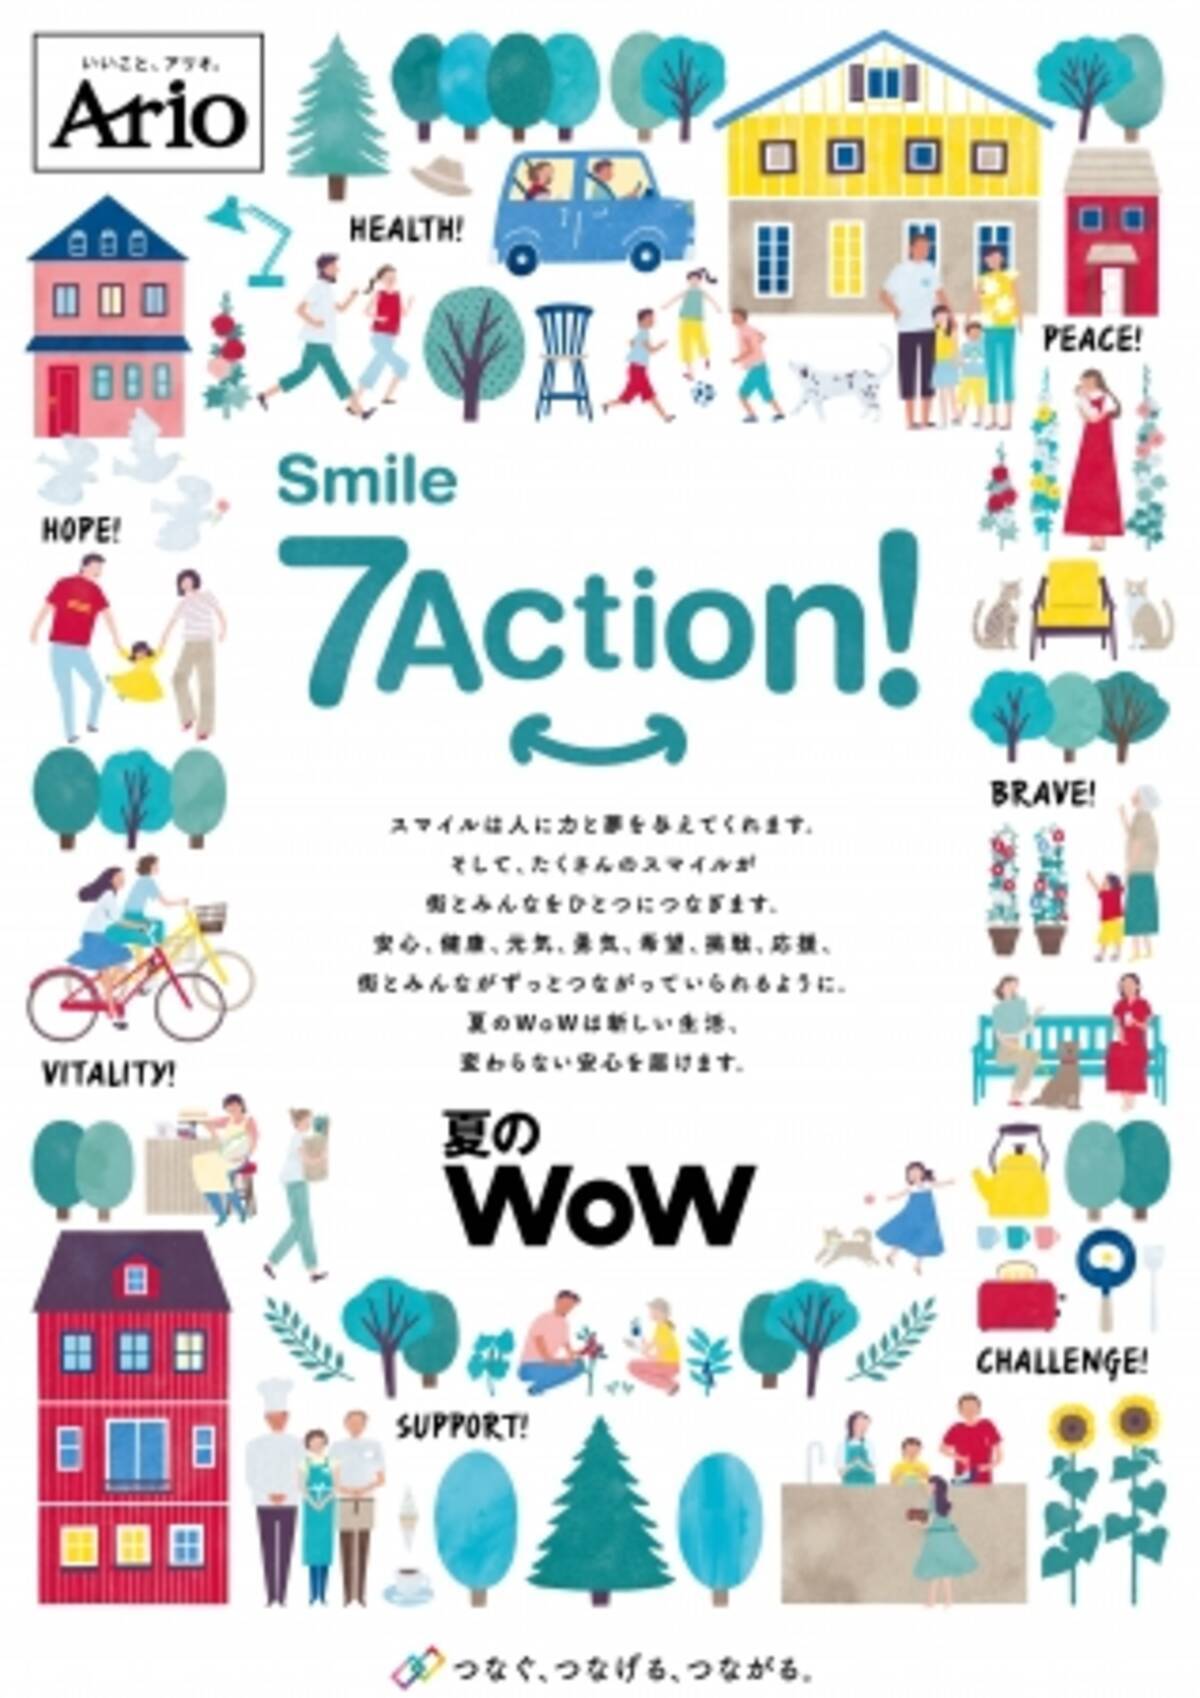 安心 元気にすごせる夏 夏のwow Smile7action が アリオ グランツリー武蔵小杉 プライムツリー赤池にて年6月26日 金 よりスタート 年6月25日 エキサイトニュース